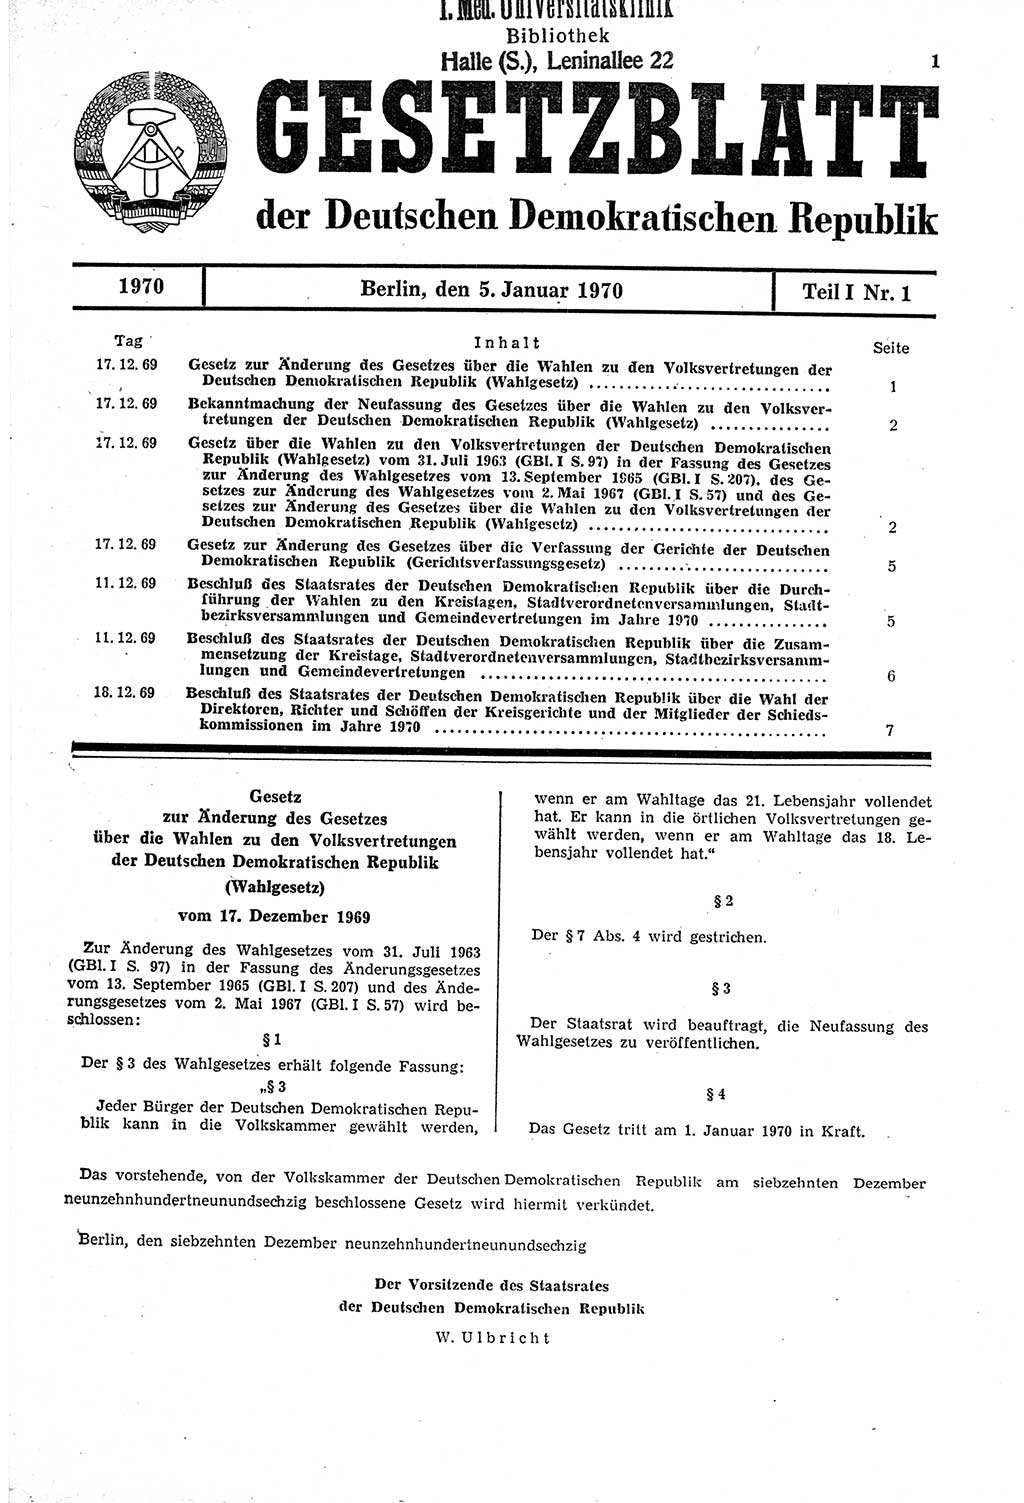 Gesetzblatt (GBl.) der Deutschen Demokratischen Republik (DDR) Teil Ⅰ 1970, Seite 1 (GBl. DDR Ⅰ 1970, S. 1)